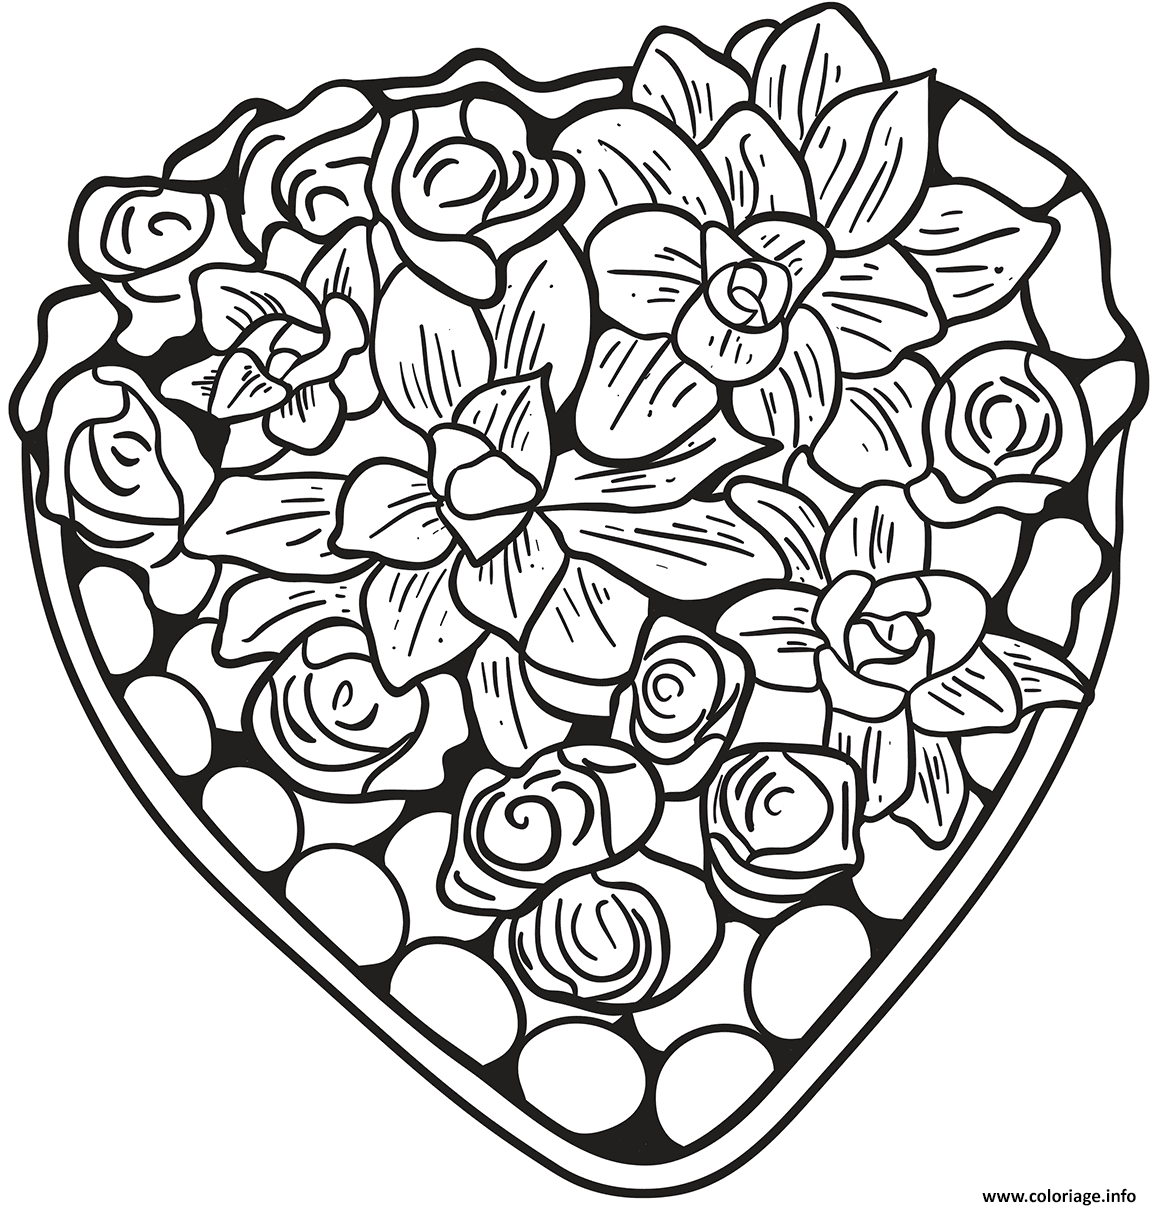 Dessin un jolie coeur fait de fleurs et roses Coloriage Gratuit à Imprimer